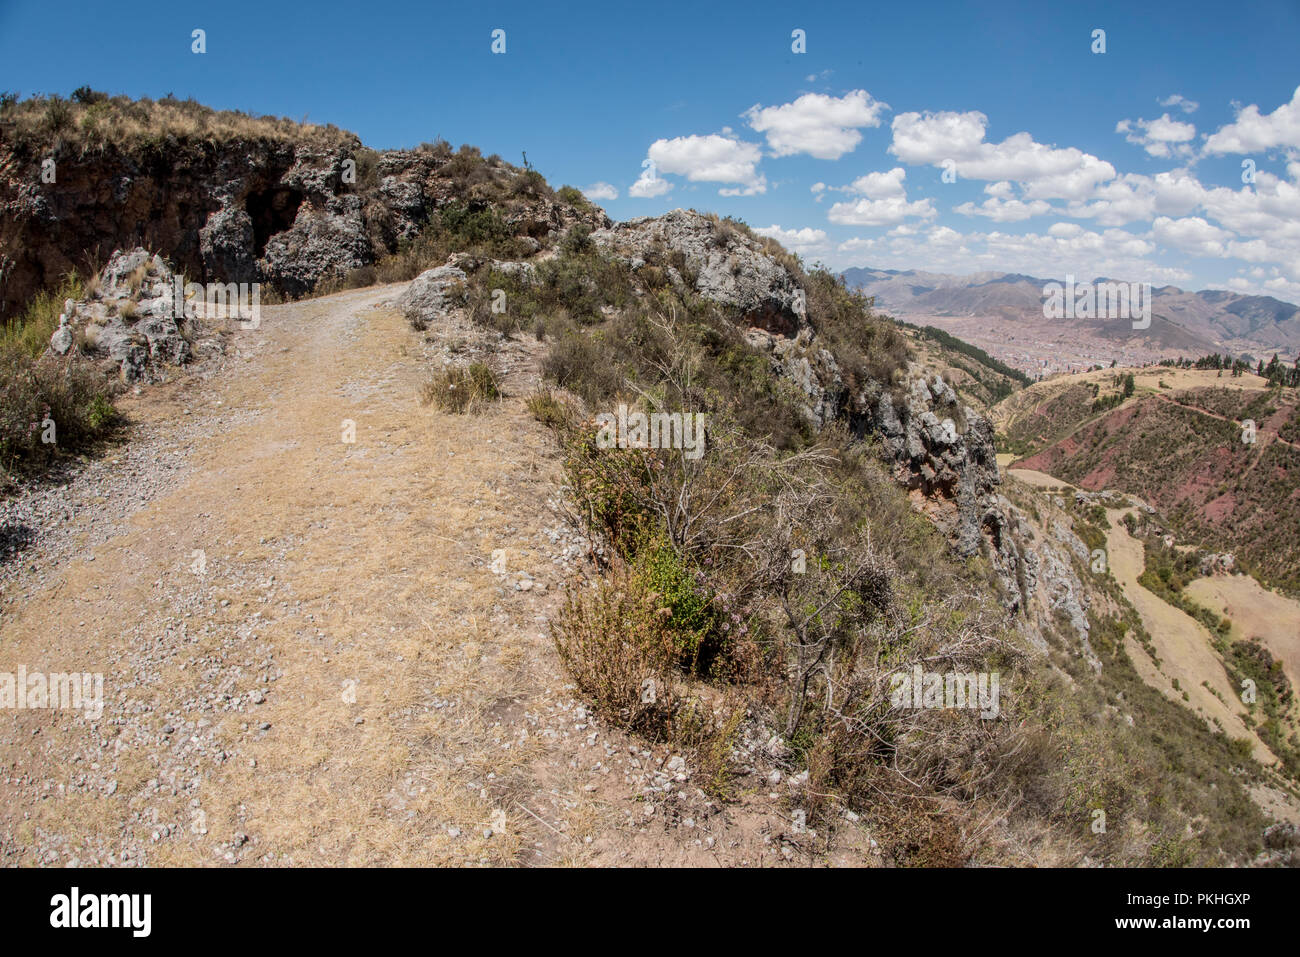 Eine unbefestigte Straße durch die Anden außerhalb von Cusco. Cusco liegt im Tal in der Ferne sichtbar. Stockfoto